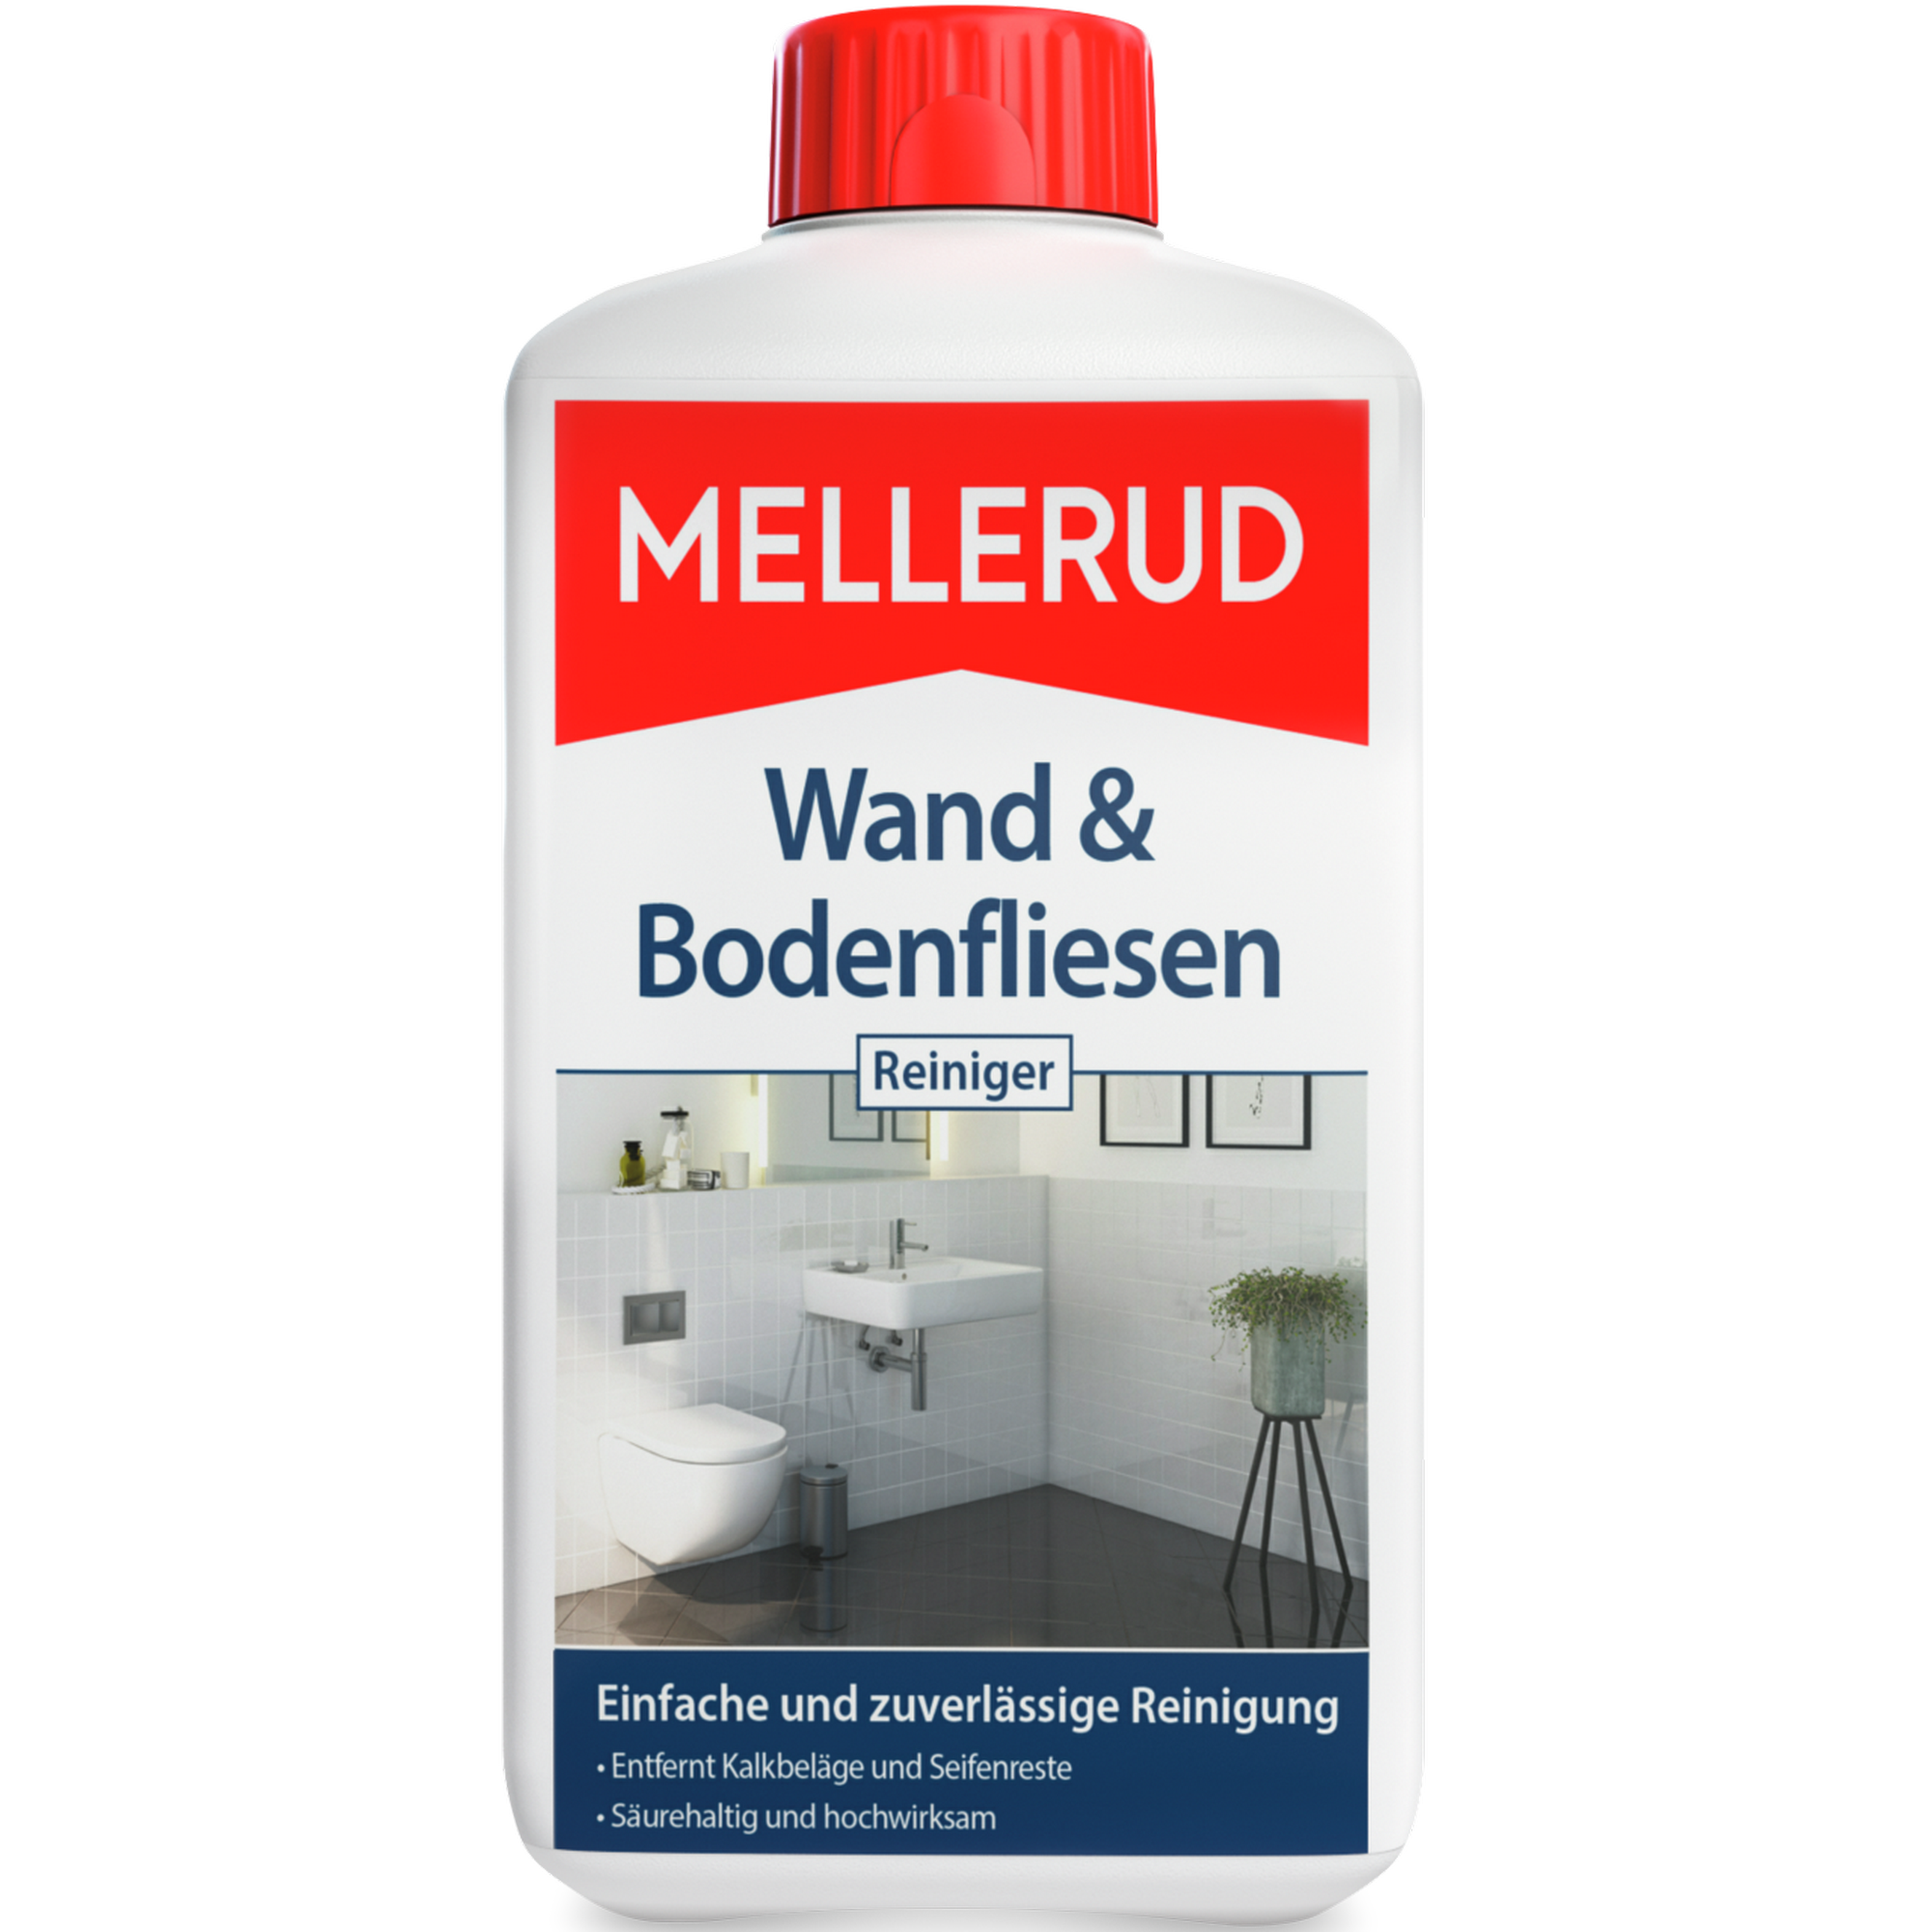 Wand- und Bodenfliesenreiniger 1000 ml + product picture